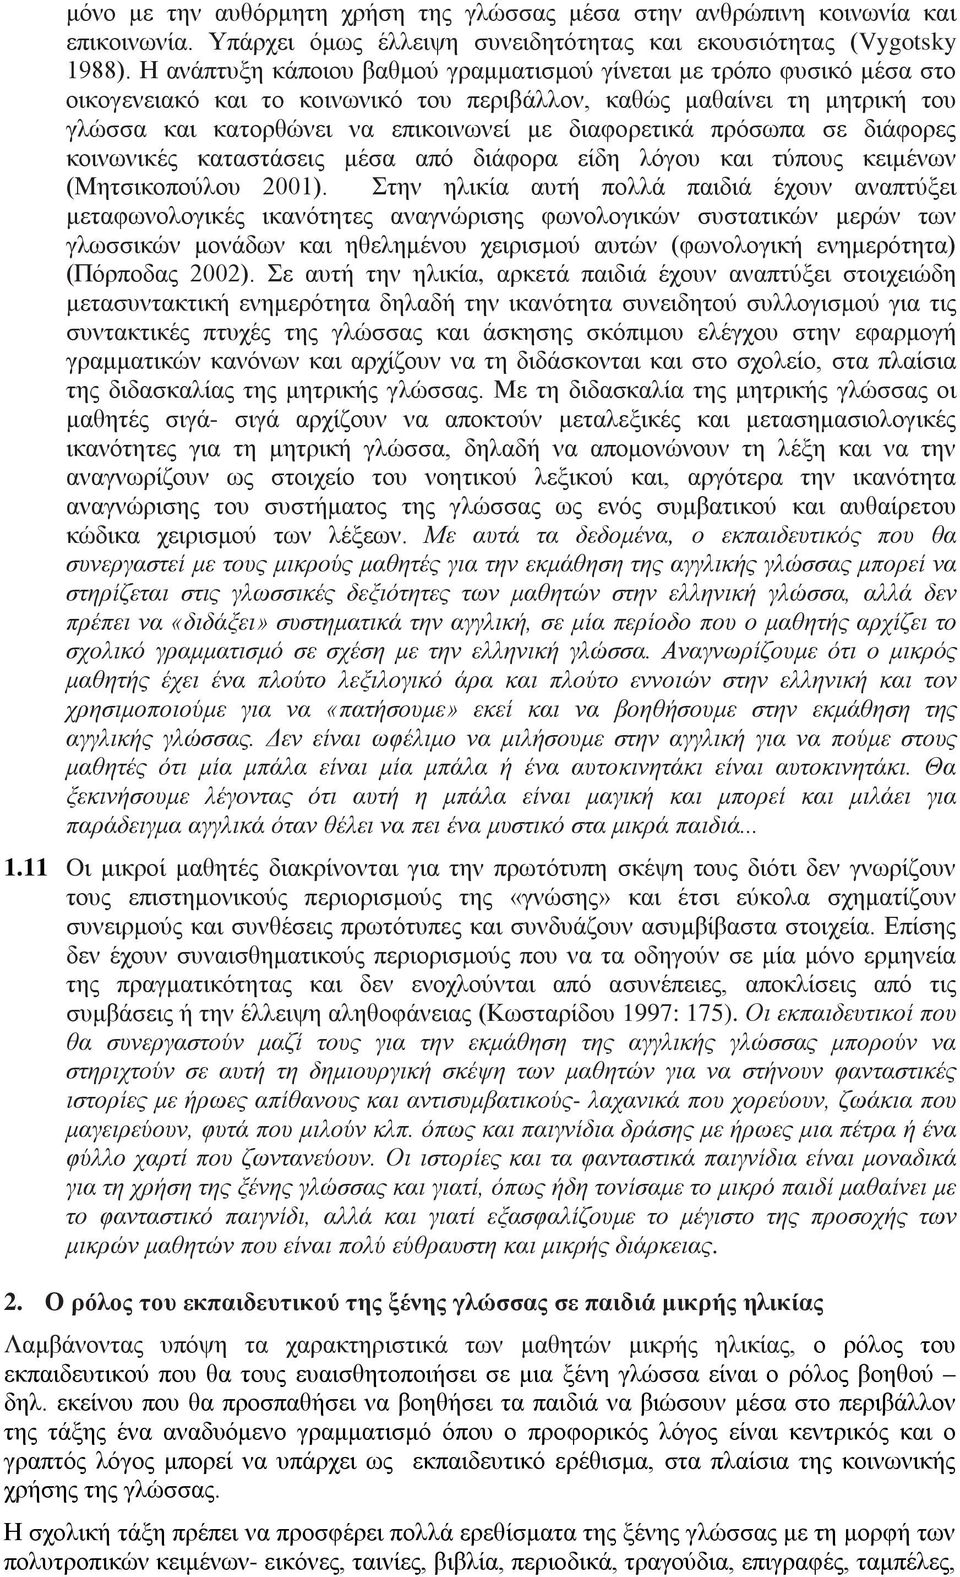 πρόσωπα σε διάφορες κοινωνικές καταστάσεις μέσα από διάφορα είδη λόγου και τύπους κειμένων (Μητσικοπούλου 2001).